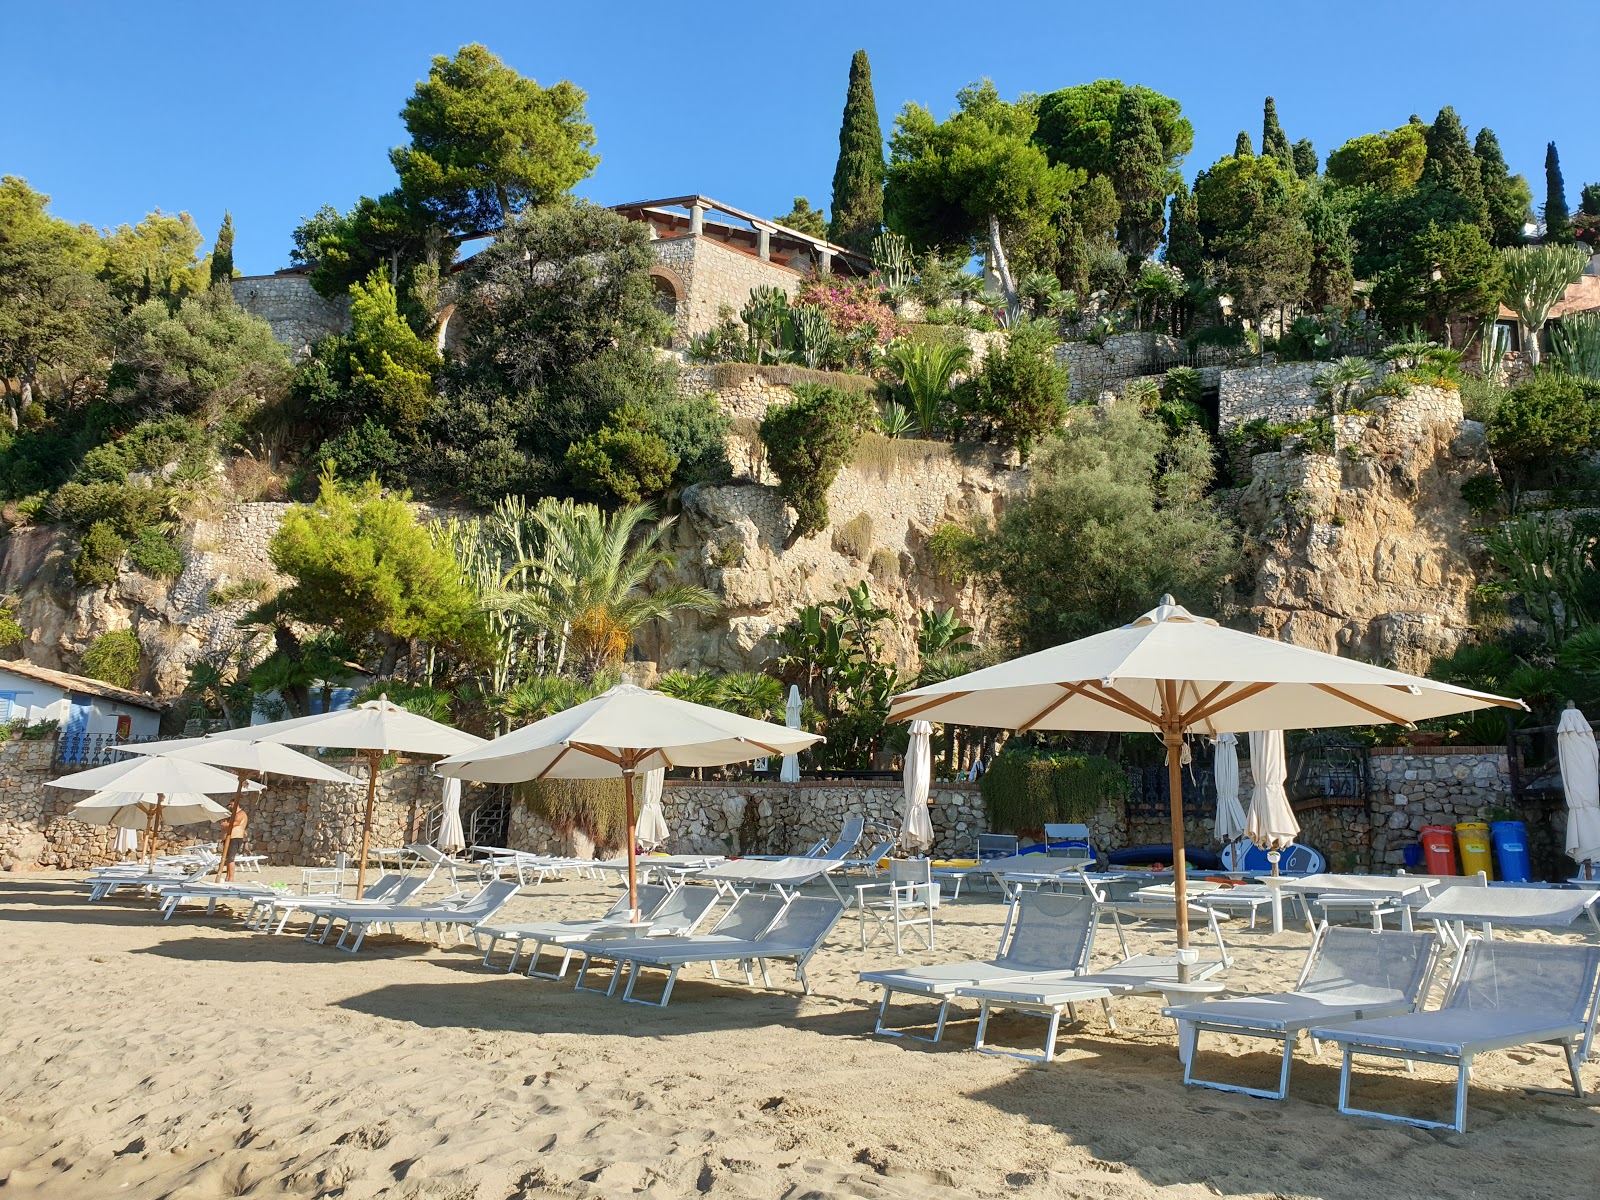 Photo of Spiaggia dell'Arenauta located in natural area